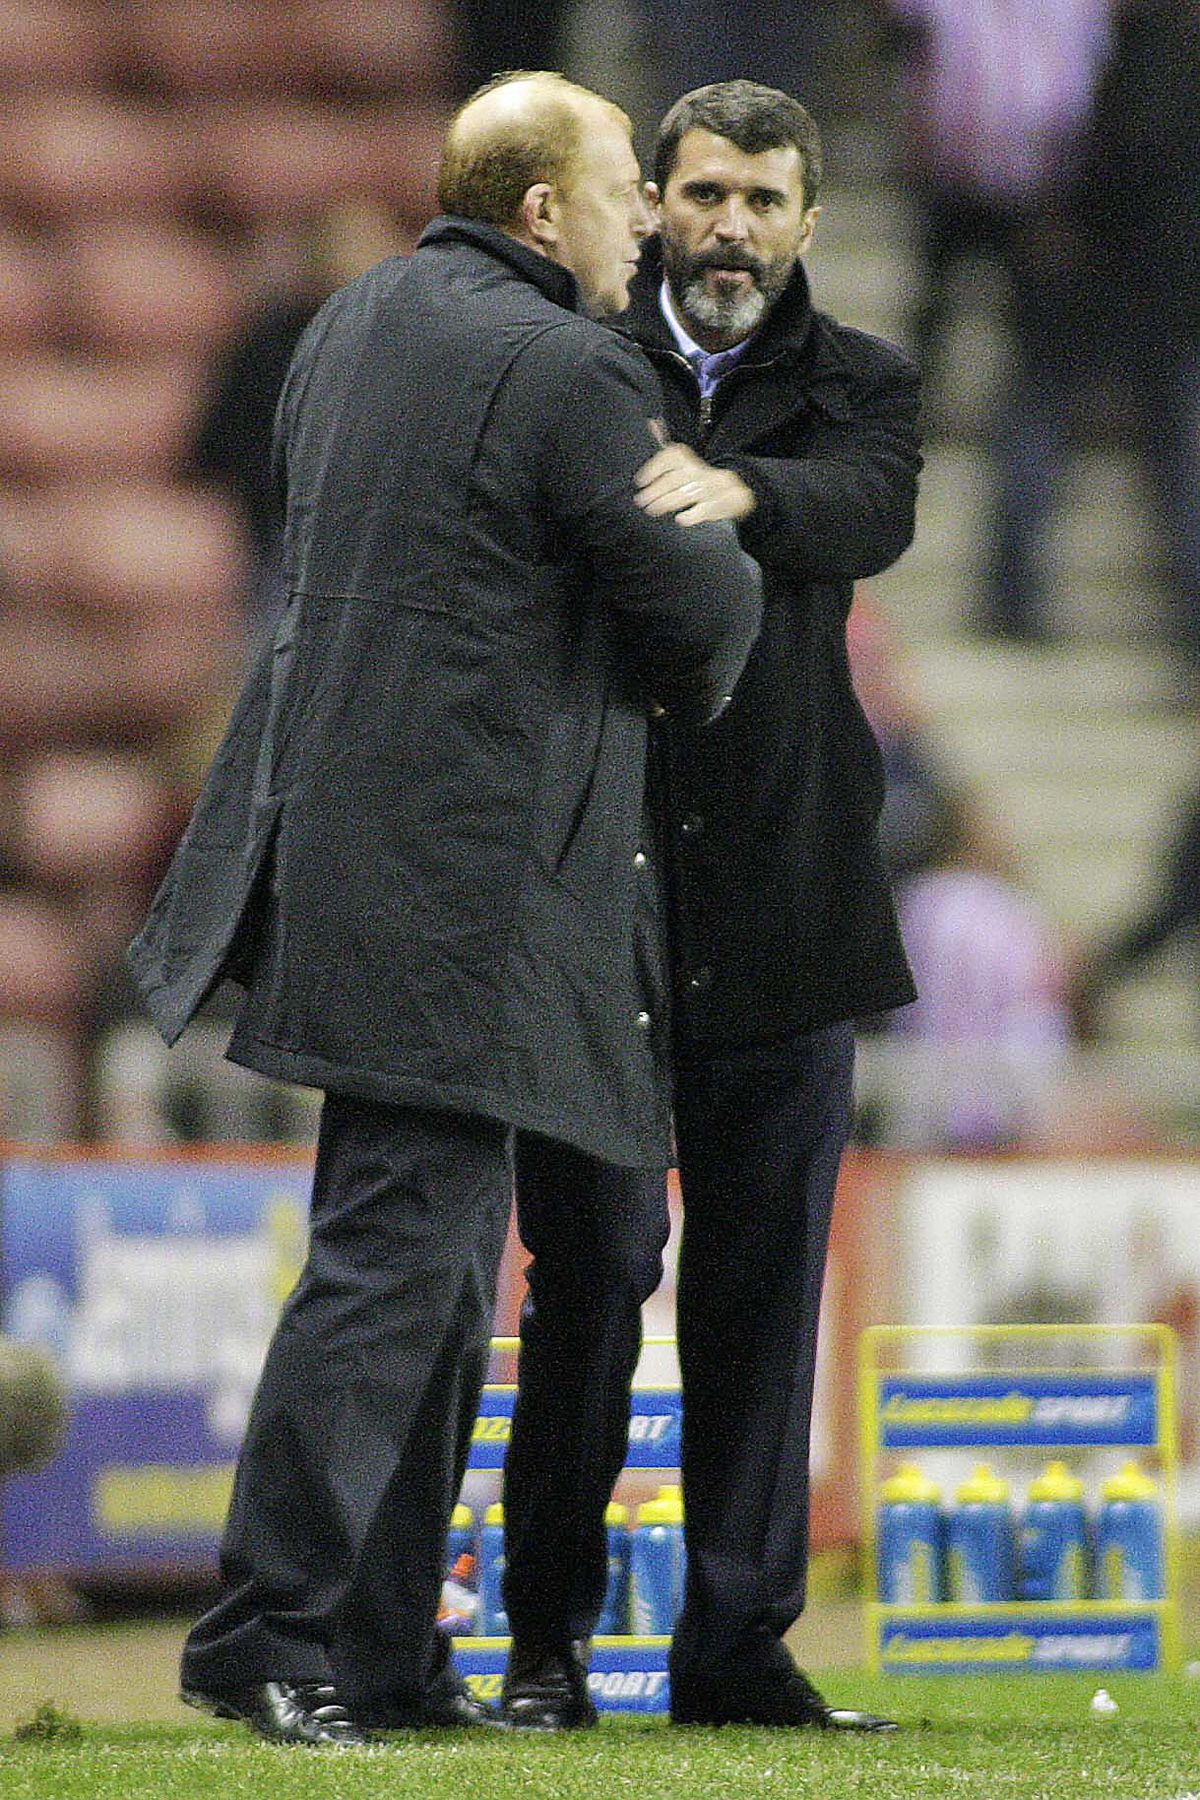 Sunderland’s manager Roy Keane (R) congr